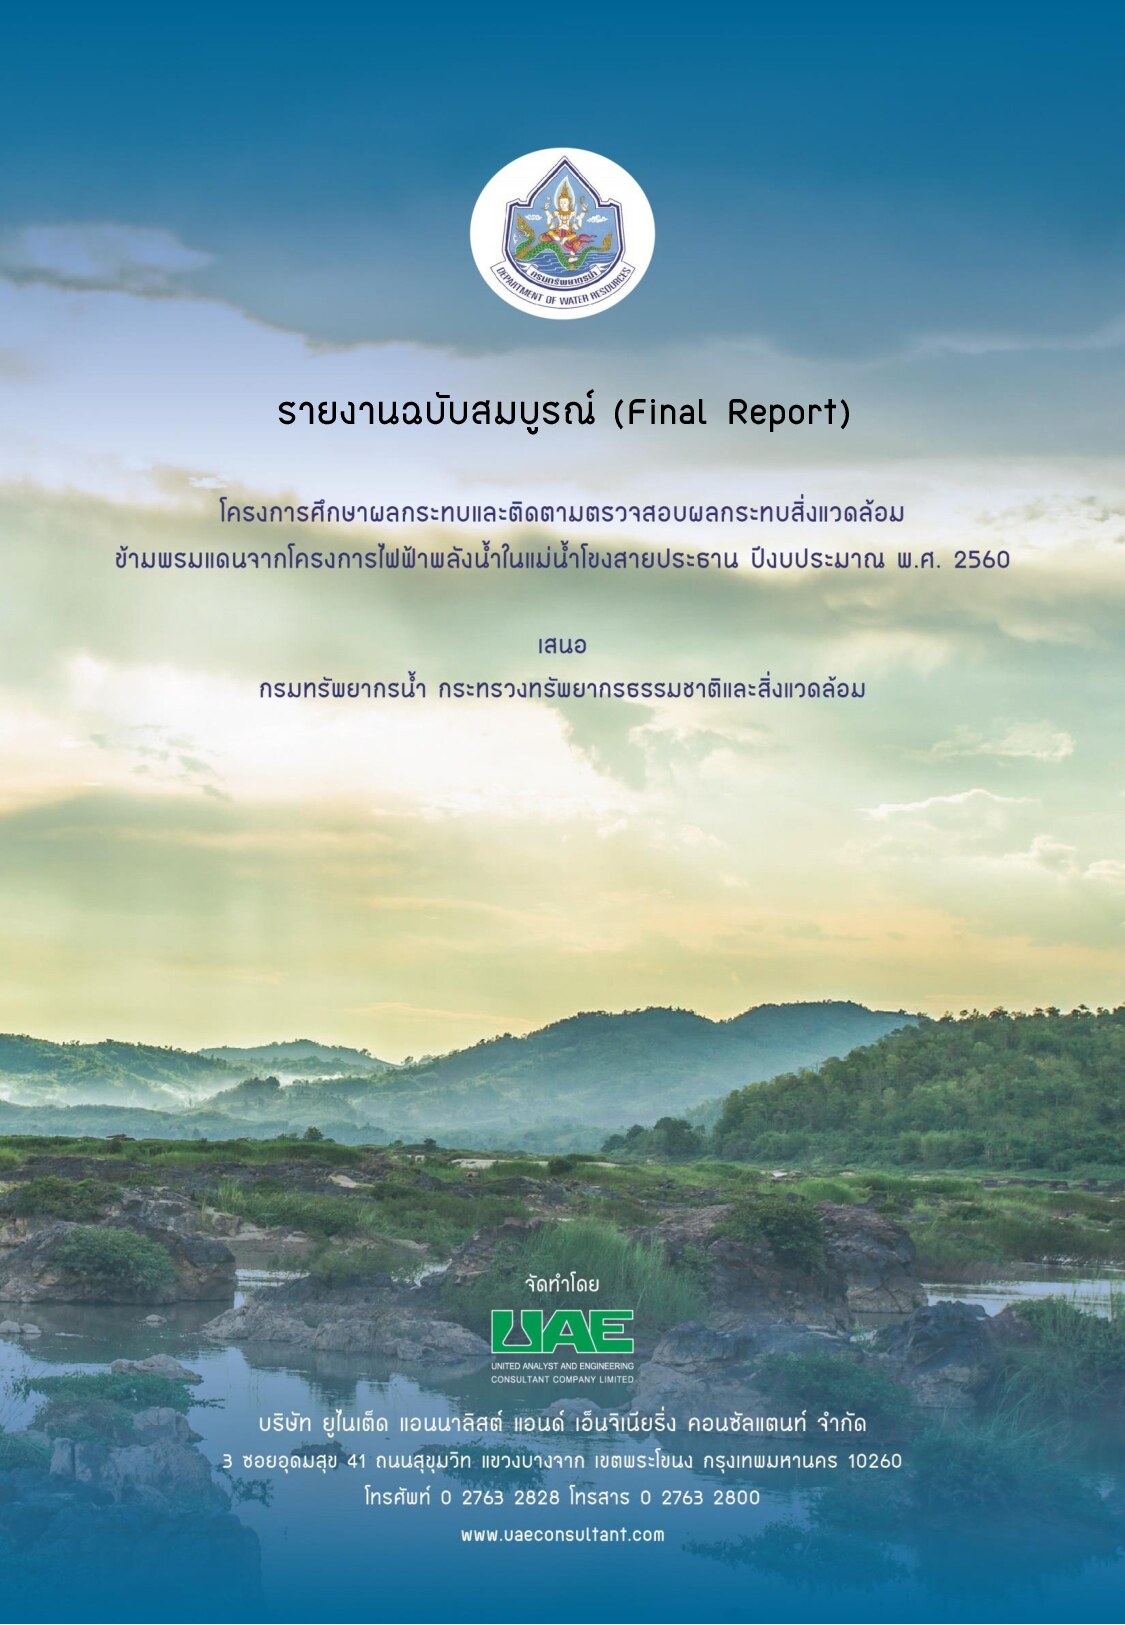 รายงานฉบับสมบูรณ์ (FINAL REPORT) โครงการศึกษาผลกระทบและติดตาม ตรวจสอบผลกระทบสิ่งแวดล้อมข้ามพรมแดน จากโครงการพัฒนาไฟฟ้าพลังน้ำ ในแม่น้ำโขงสายประธาน ปีงบประมาณ พ.ศ. 2560